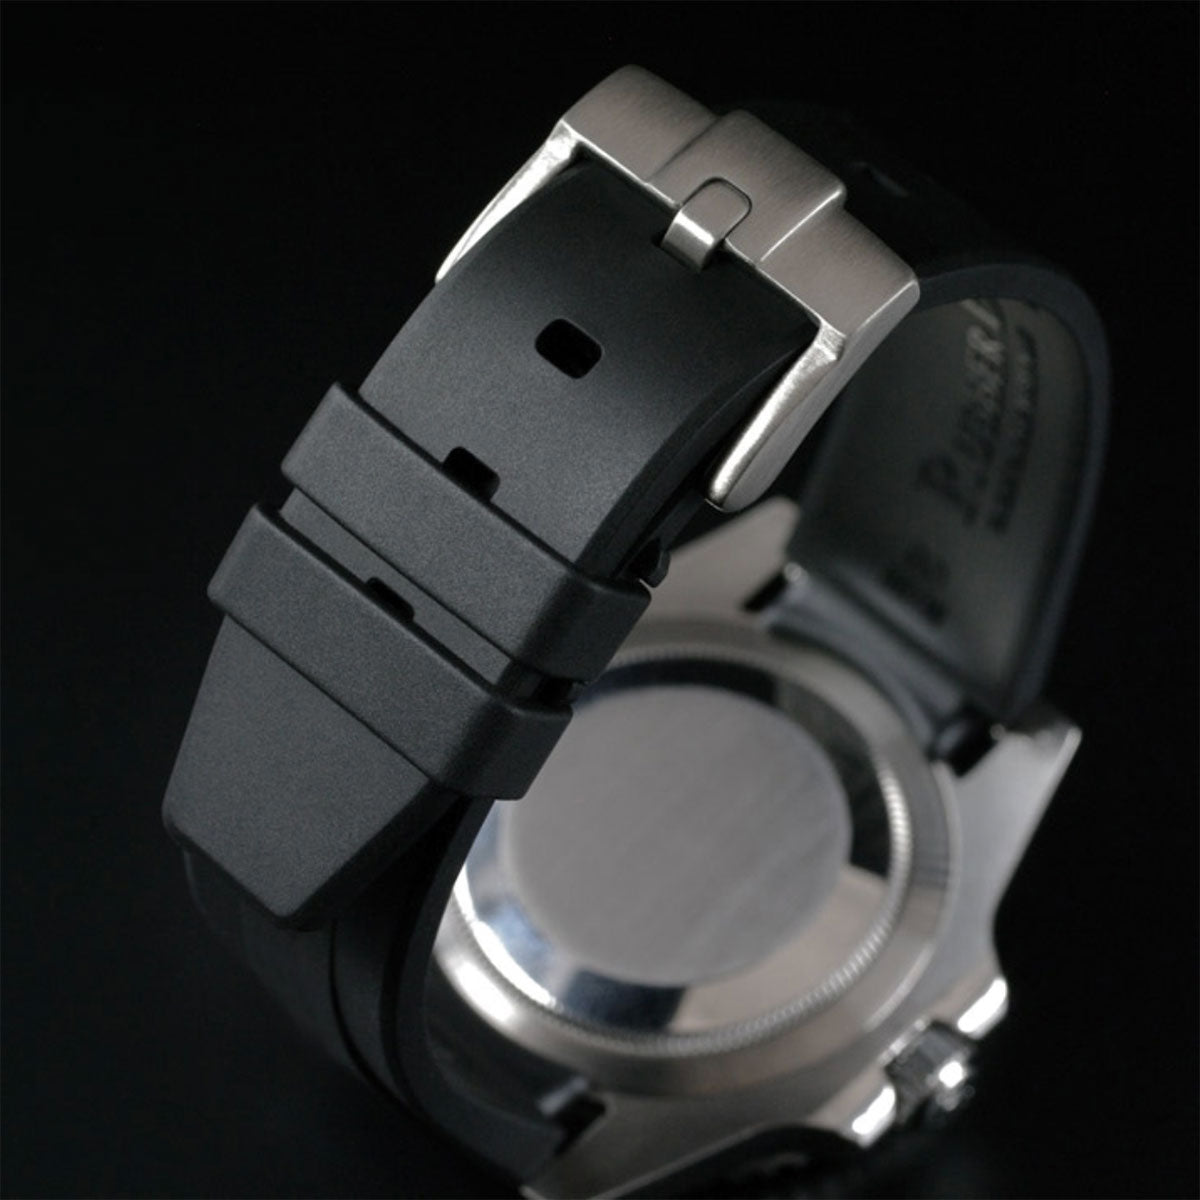 Rolex Oyster Bracelet - Rubber B - Bracelet caoutchouc pour Oyster Perpetual / Datejust 31mm - Série boucle ardillon - watch band leather strap - ABP Concept -